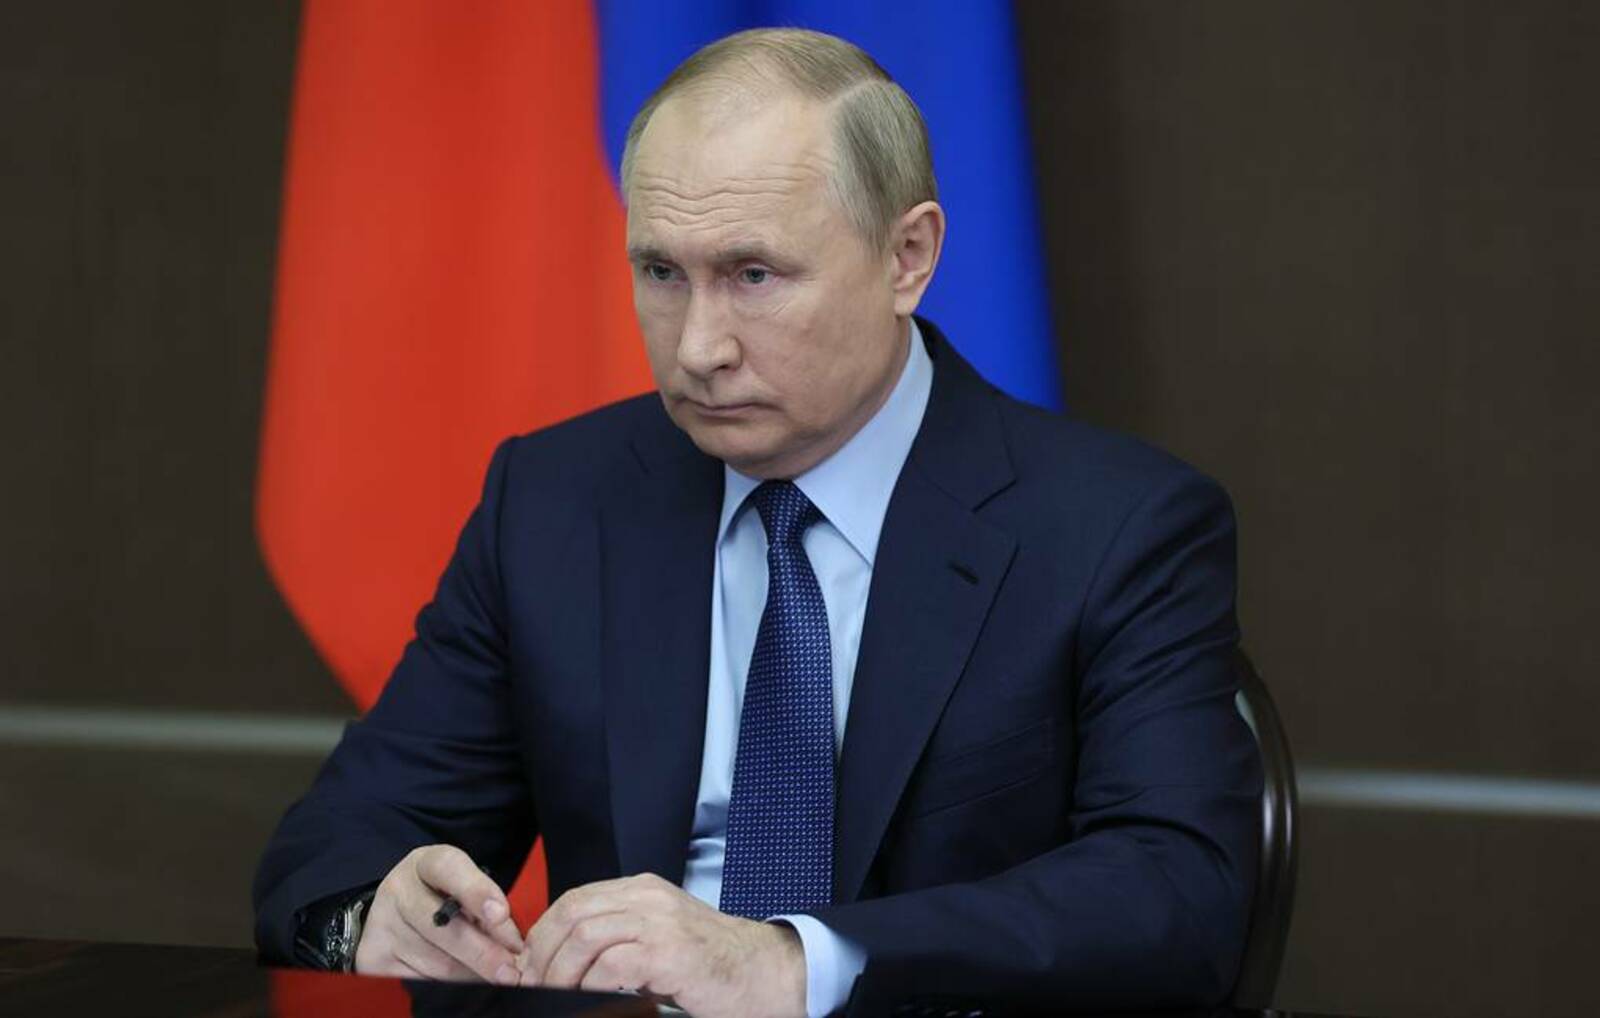 Михаил Метцель/POOL/ТАСС.  Путин испытал назальную вакцину от коронавируса